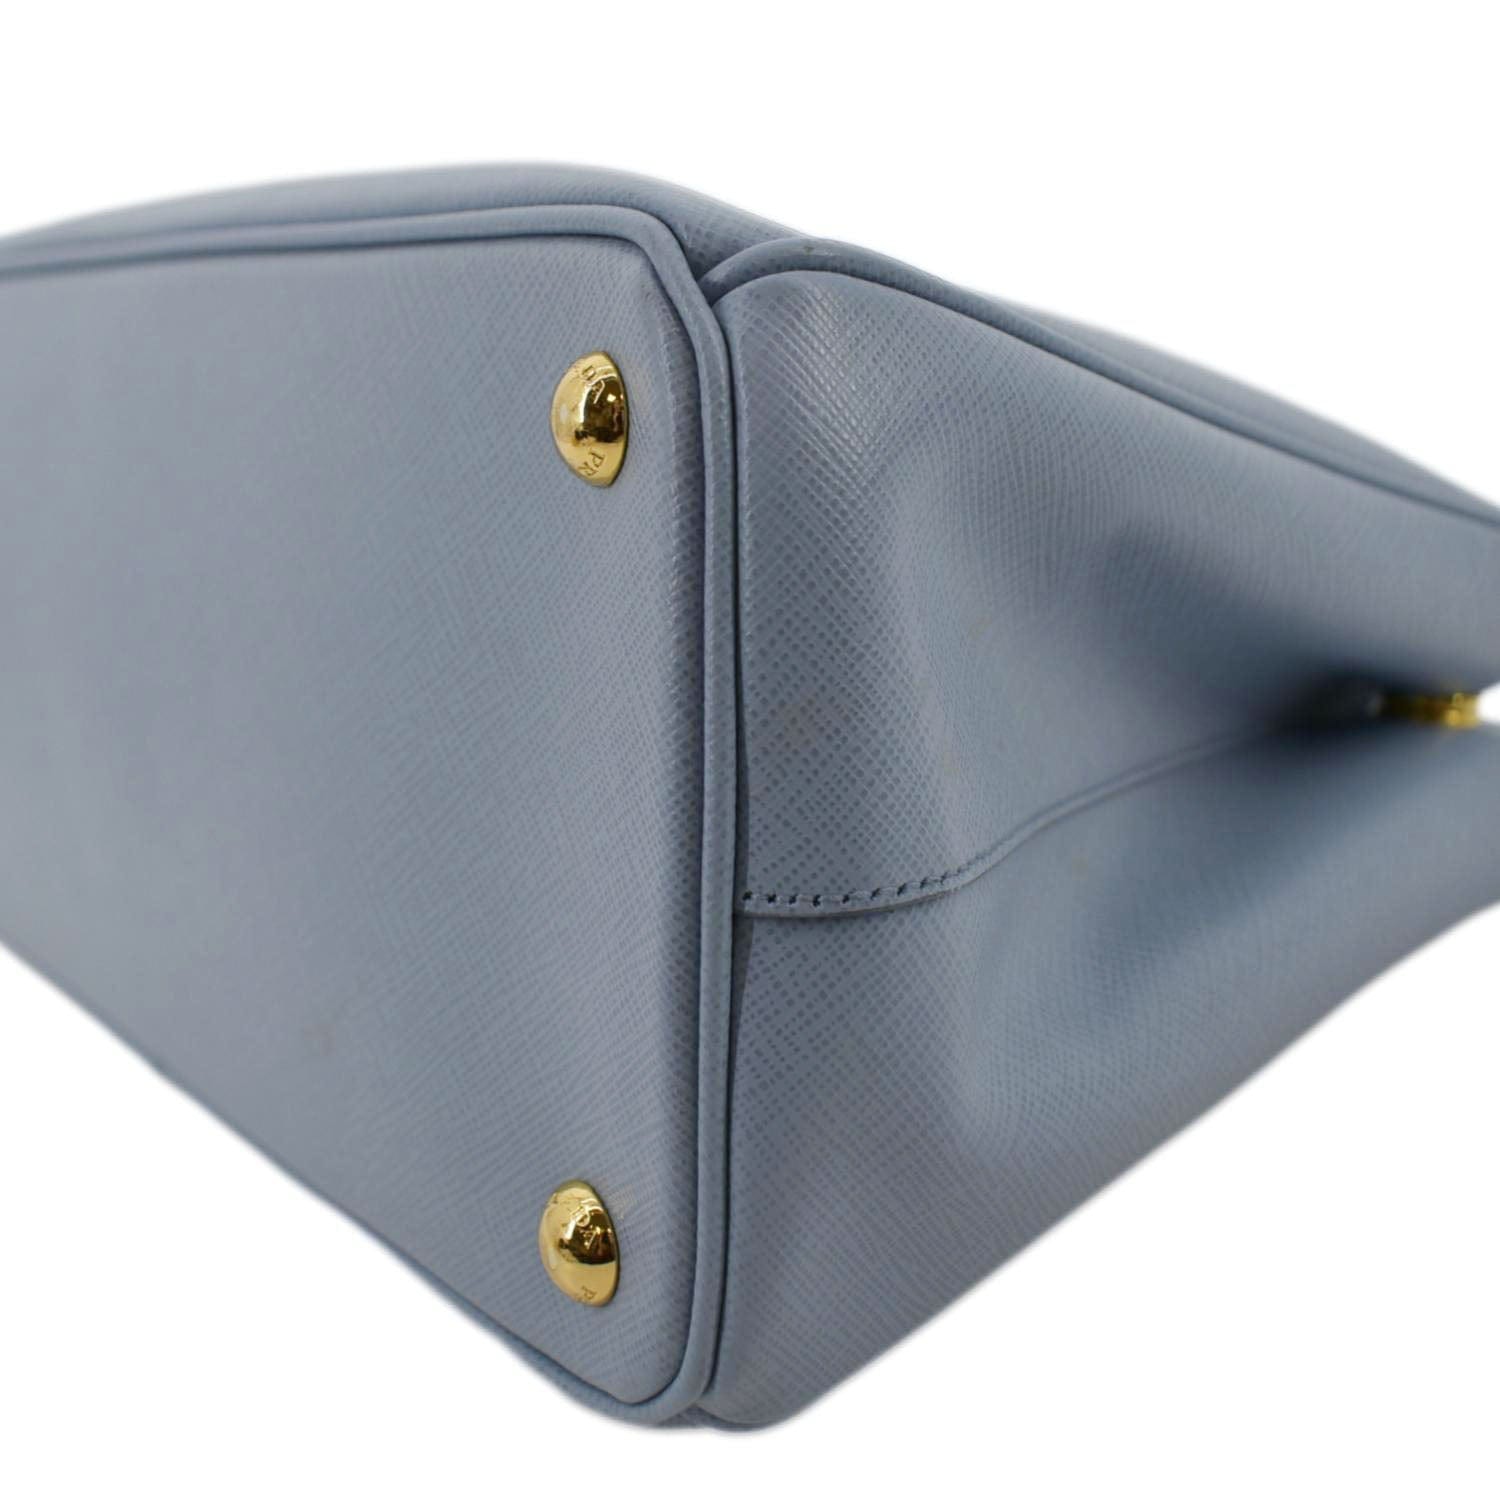 Prada Small Saffiano Leather Double Prada Bag